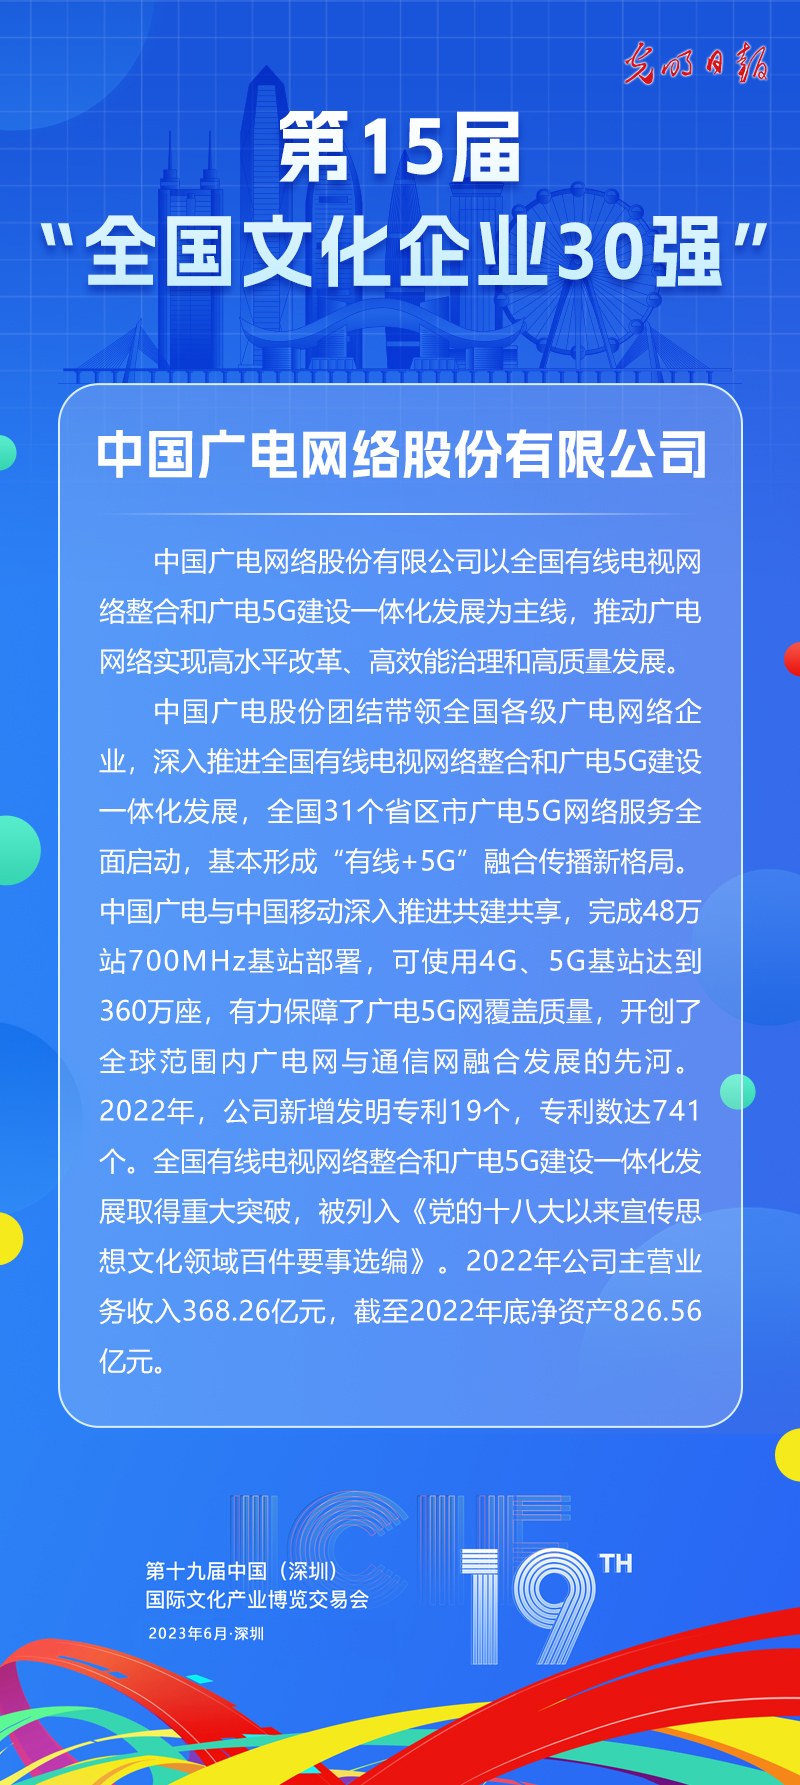 第十五届“全国文化企业30强”简介：中国广电网络股份有限公司